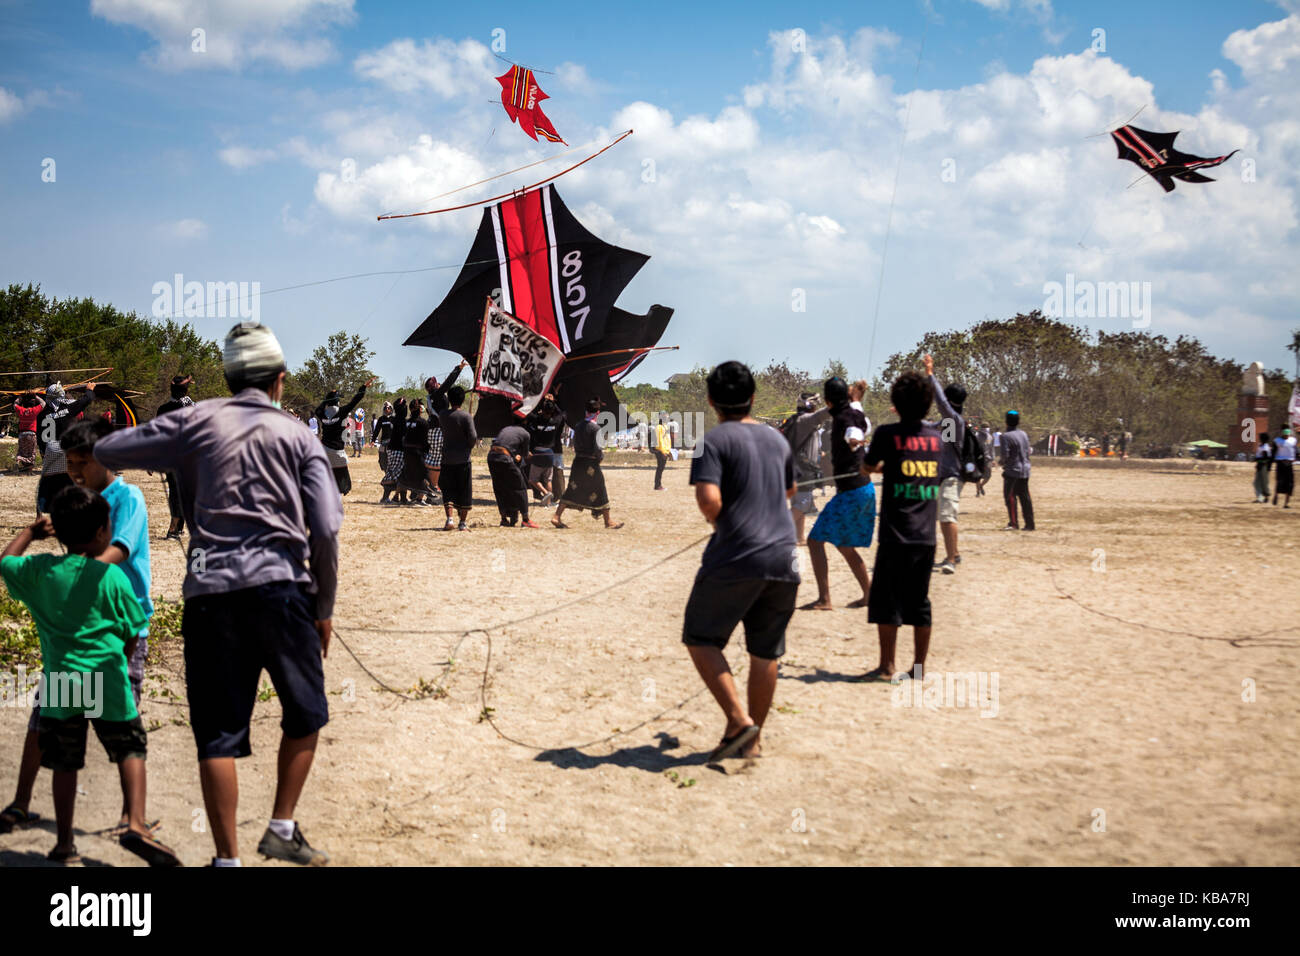 Fisch Drachen kämpfen, weg vom Boden zu erhalten als Drachenflieger Schlacht an der Bali Drachen fliegen Festival auf einem Bali Beach im Sommer während die windige Jahreszeit tun Stockfoto